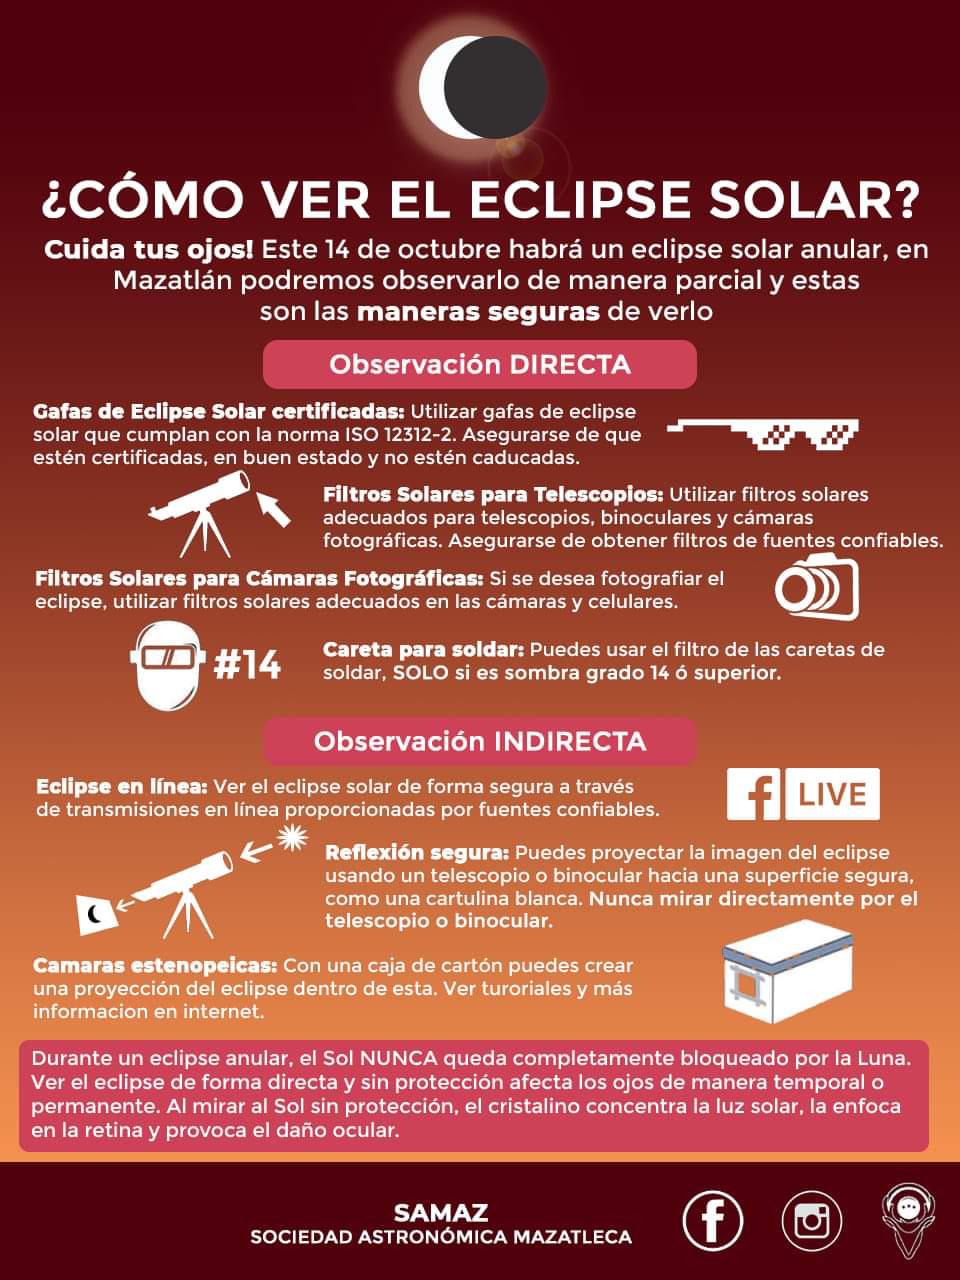 $!Ofrece Samaz guía de observación segura para el eclipse anular del 14 de octubre